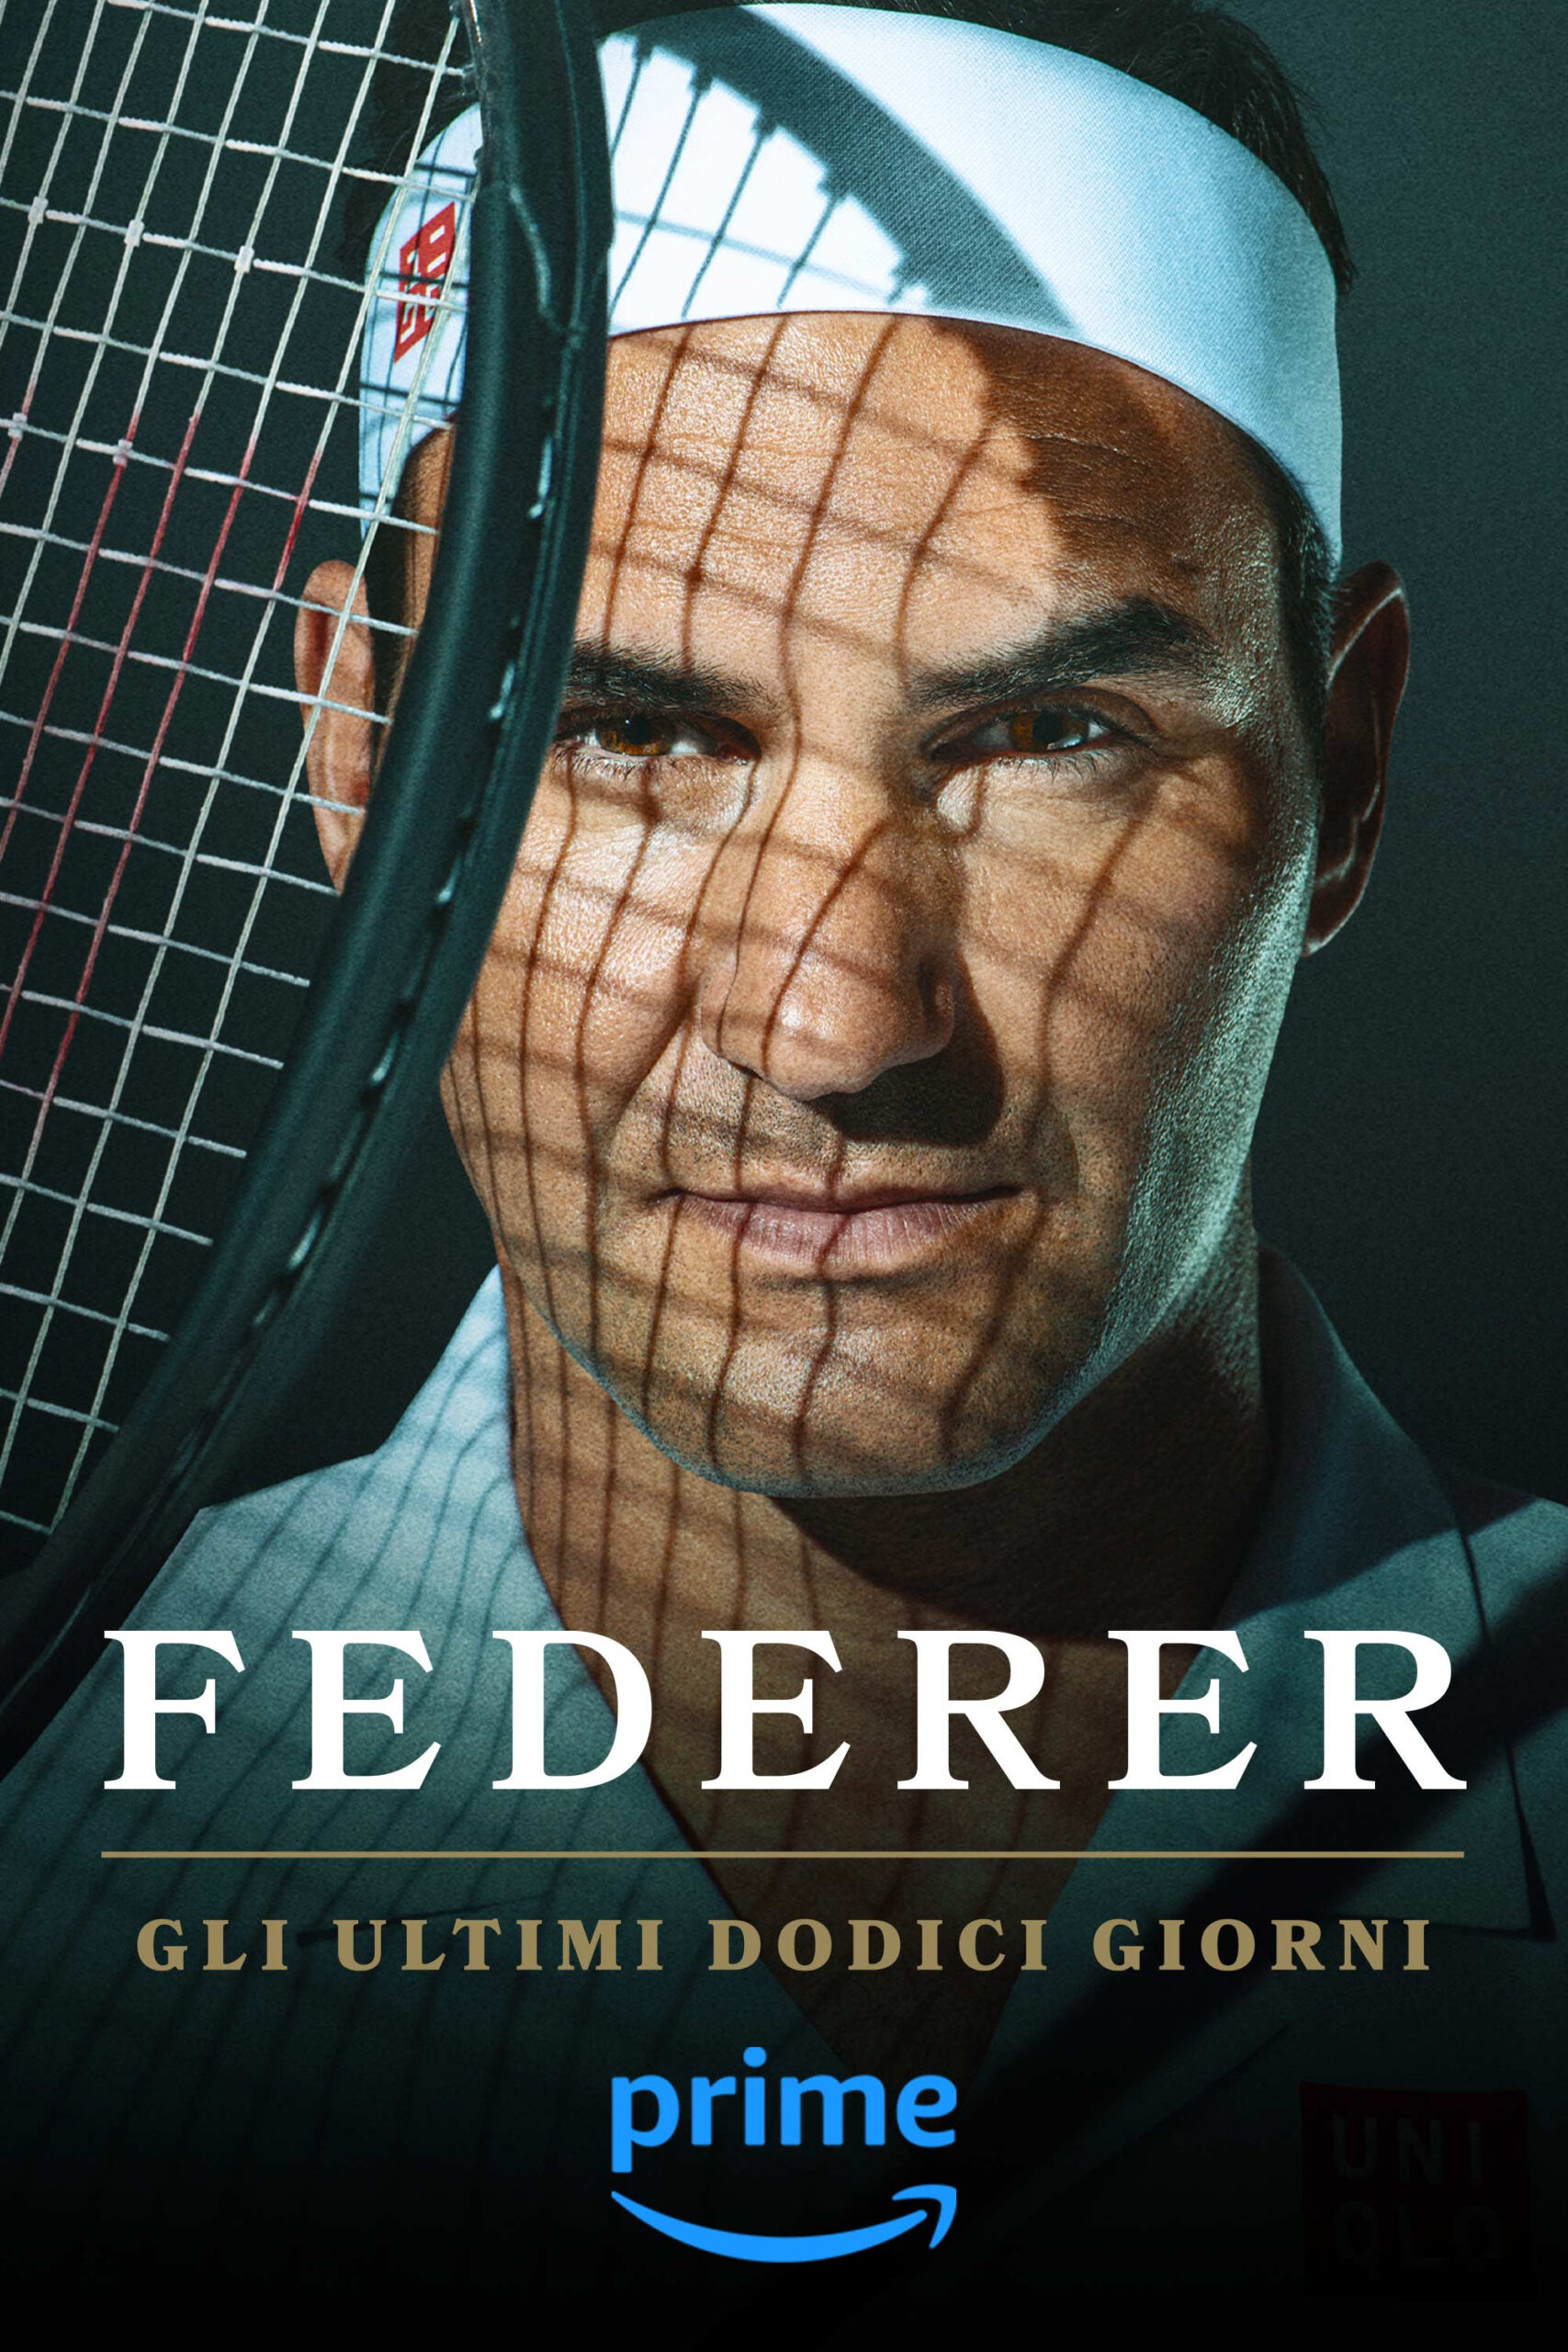 “Federer: Gli ultimi dodici giorni”: il trailer ufficiale e il poster del documentario, dal 20 giugno su Prime Video